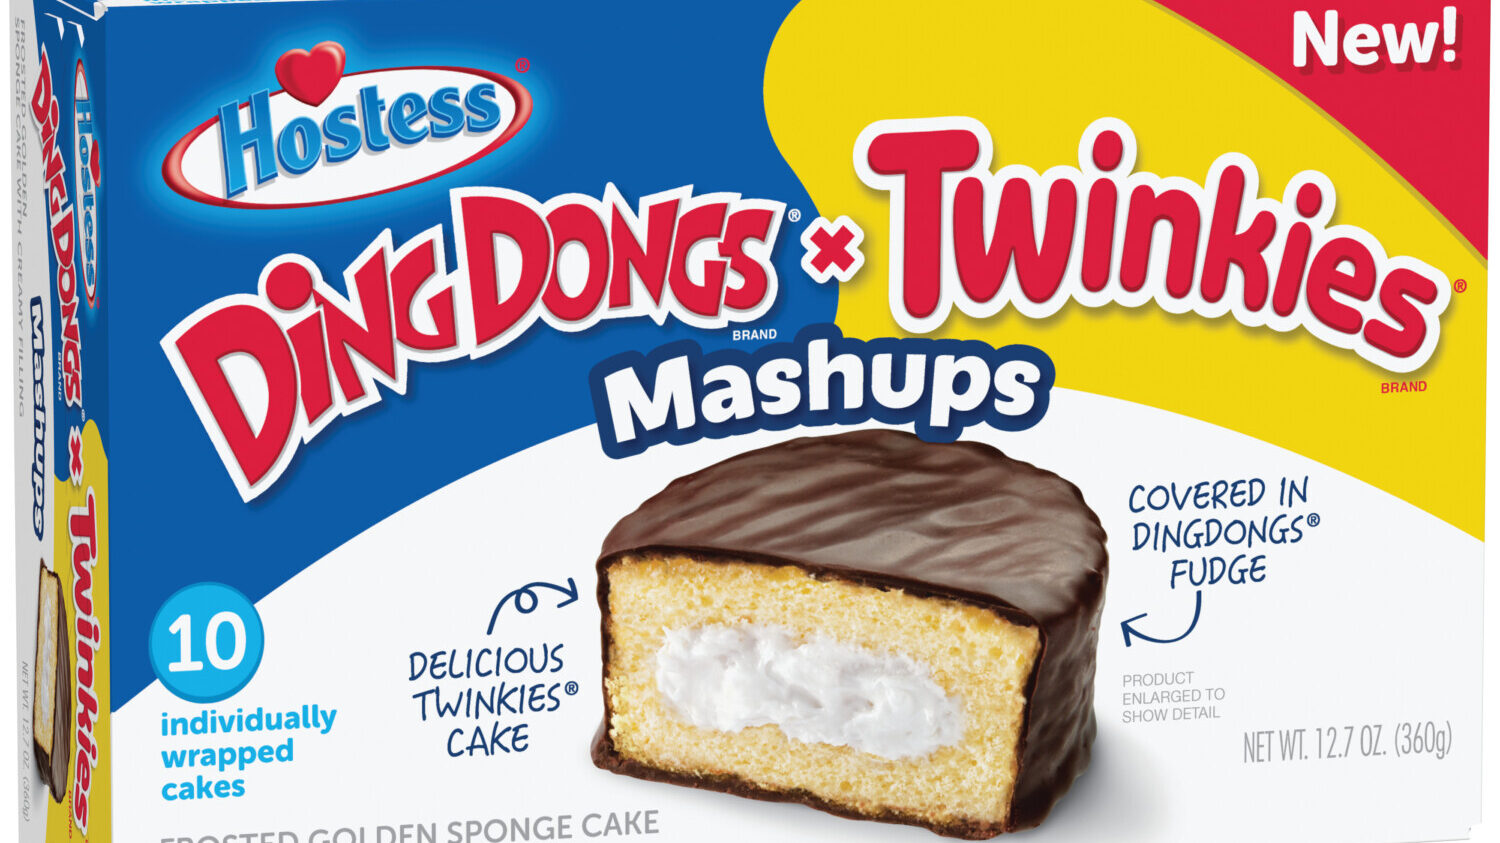 Ding Dongs and Twinkies Mashups box